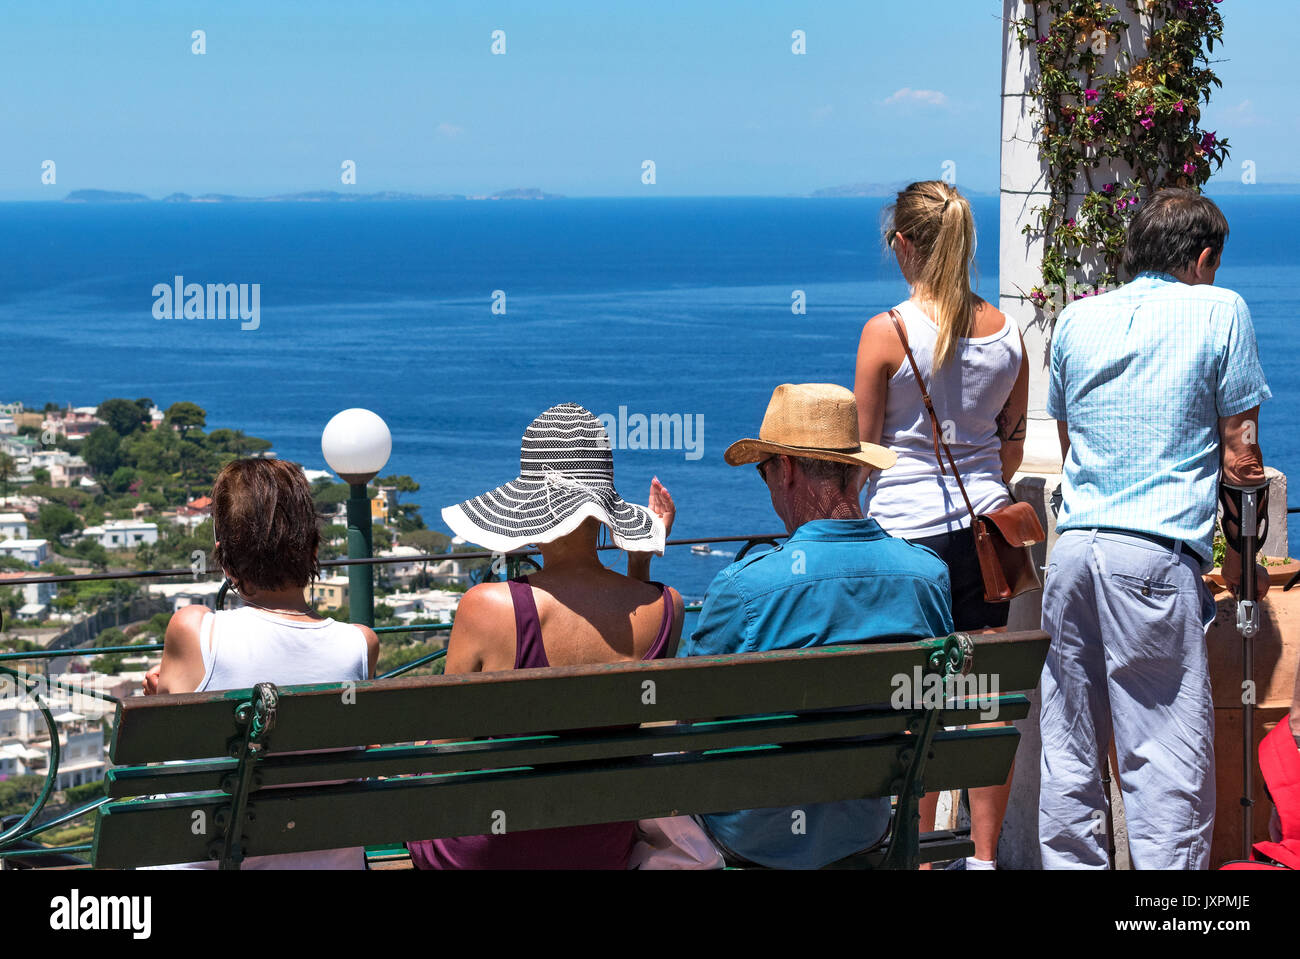 Les visiteurs sur l'île de Capri, admirez la vue sur la baie de Naples, Italie. Banque D'Images